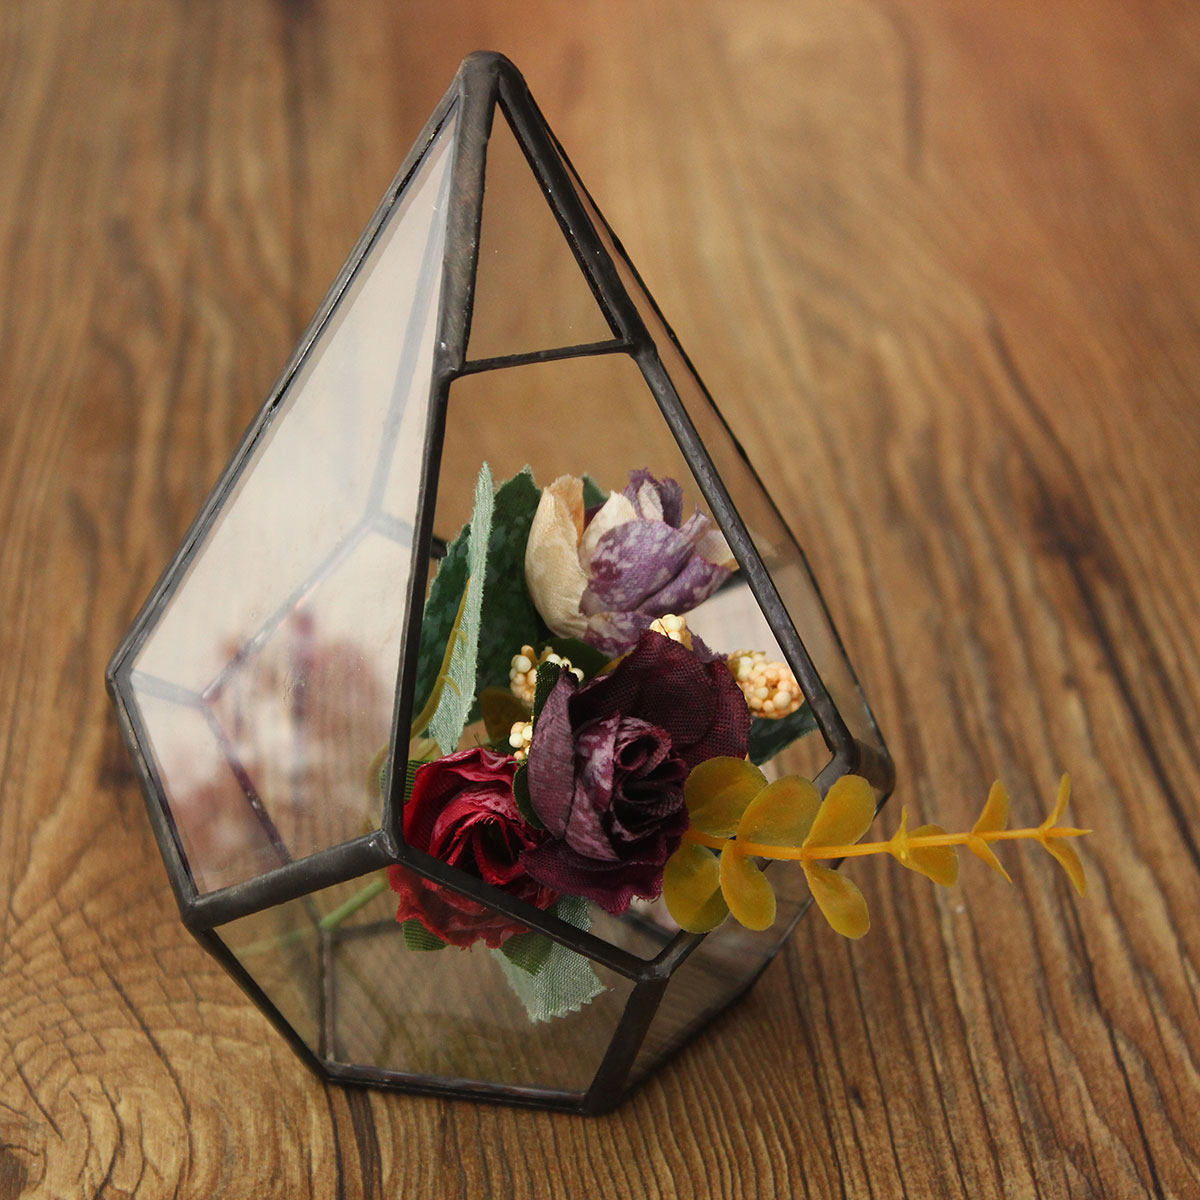 Triangle Greenhouse Glass Terrarium DIY Micro Landscape Succulent Plants Flower Pot